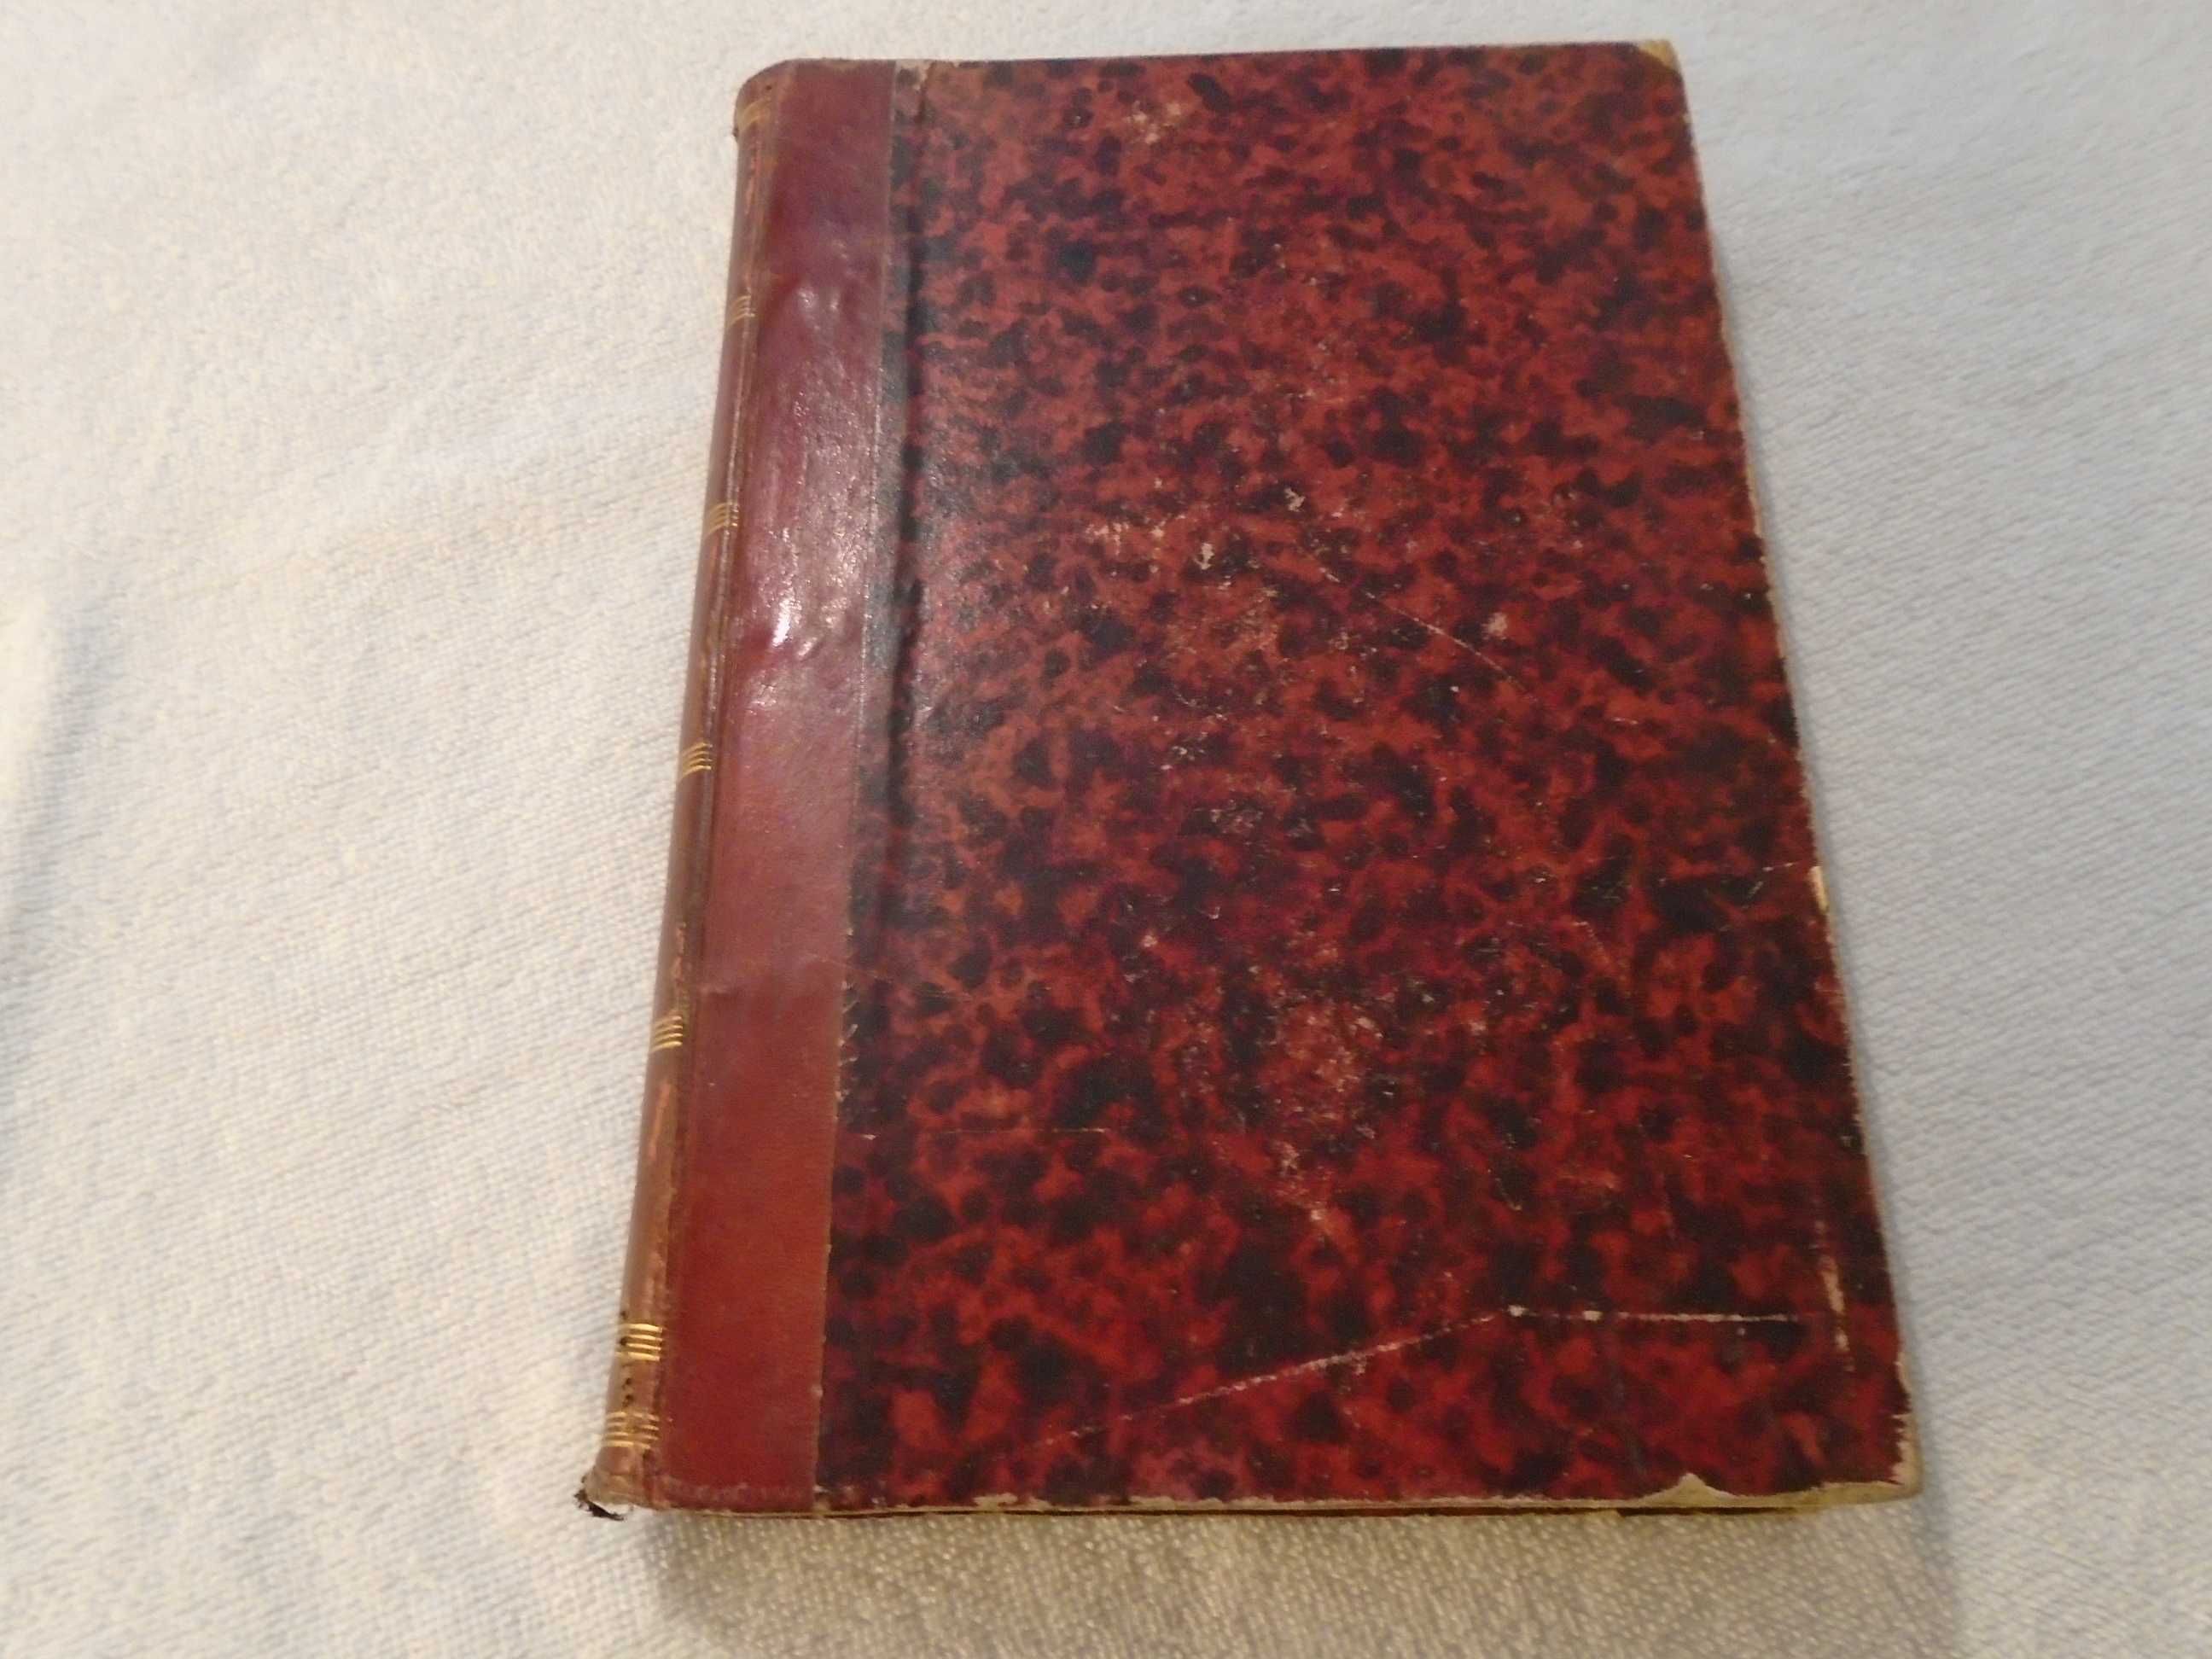 Livro antigo - Anuário da Universidade de Coimbra de 1886-7